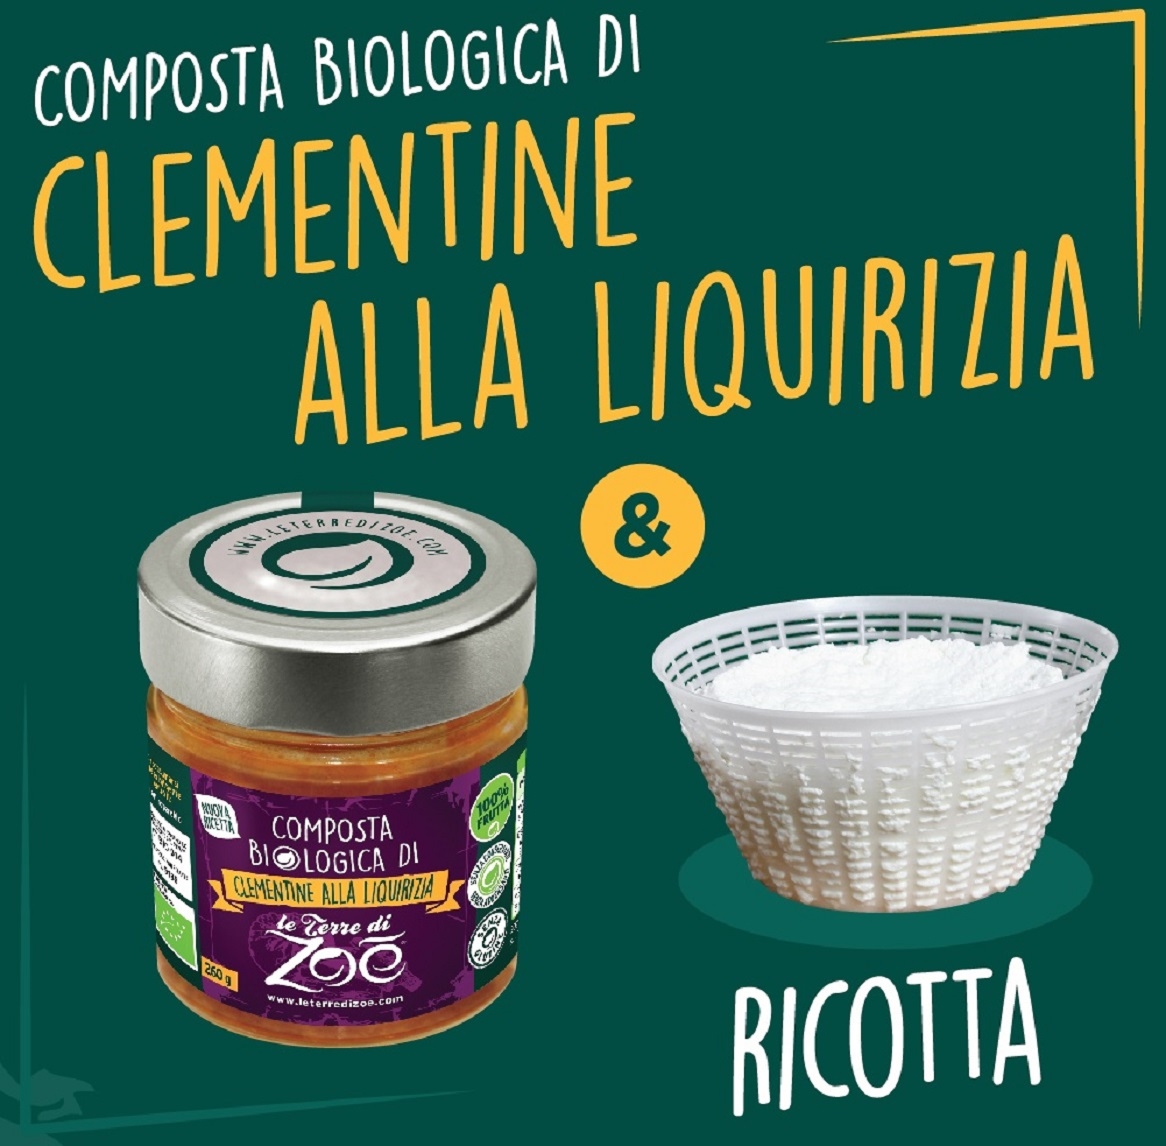 Italian Organic Compotes Clementine and Liquorice 40g Le terre di zoè 4